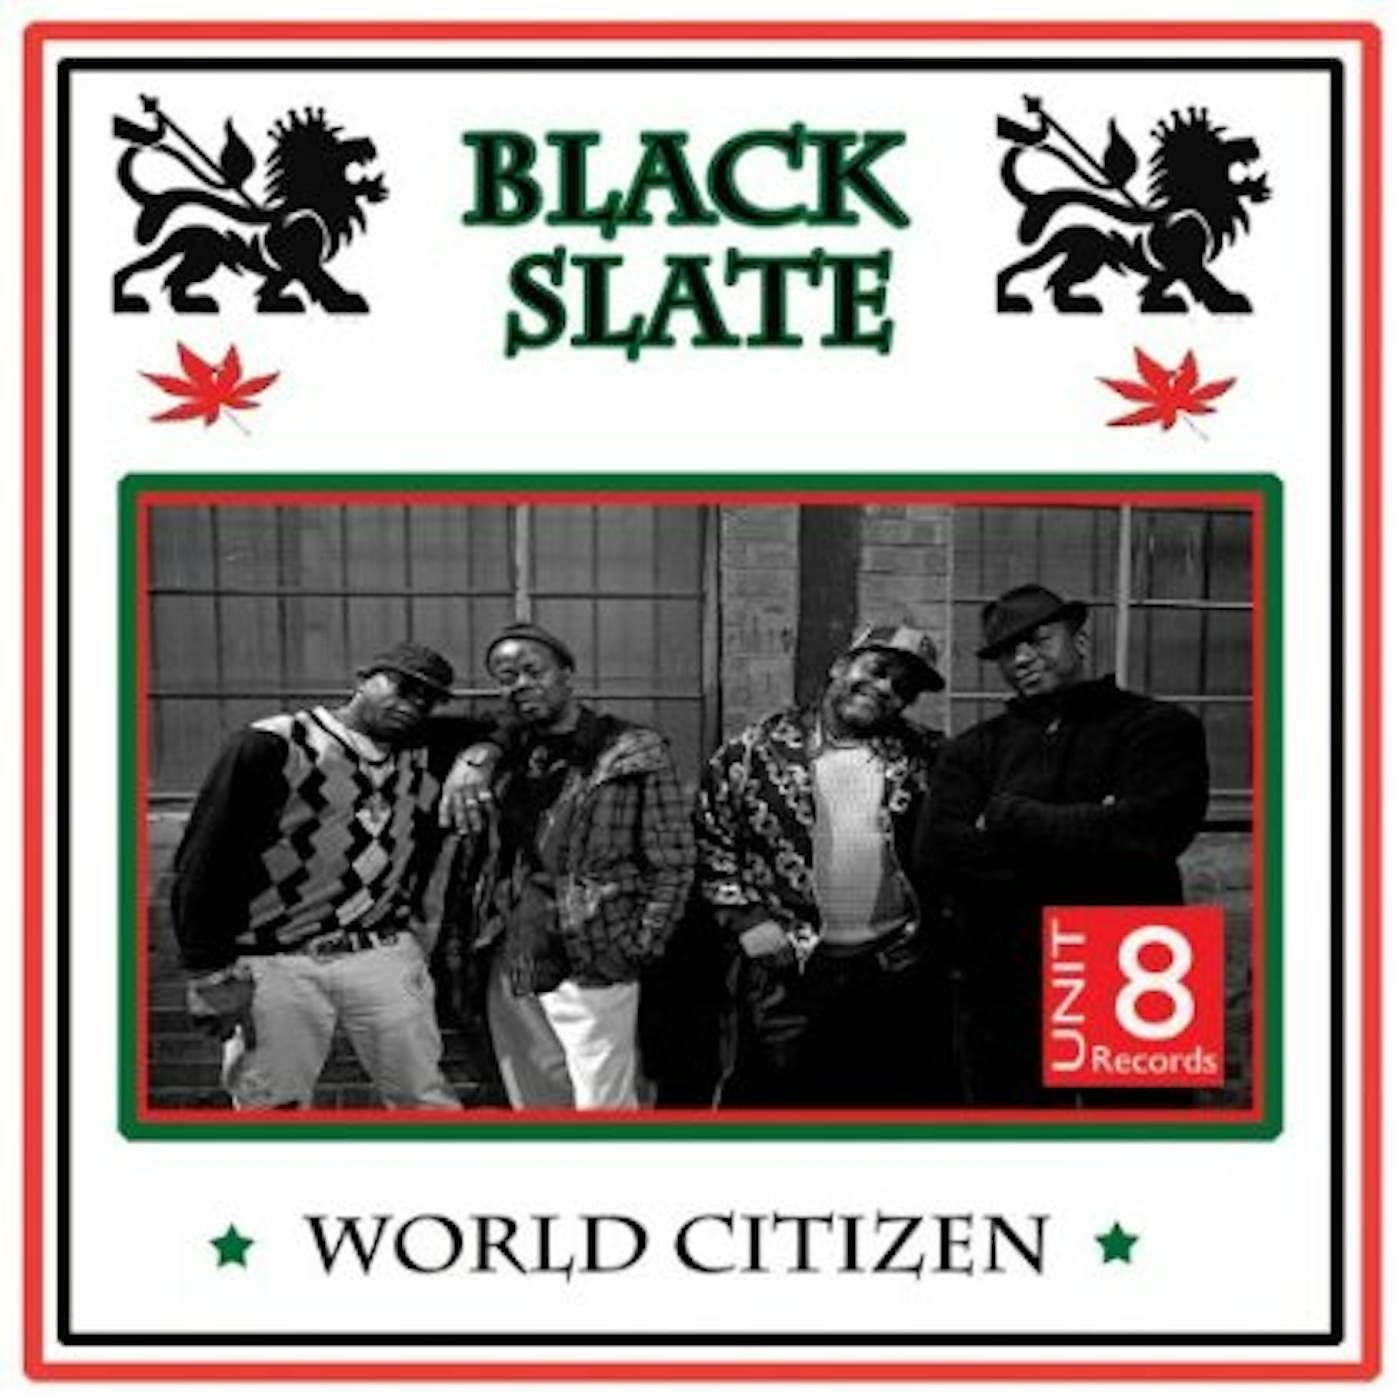 Black Slate WORLD CITIZEN CD